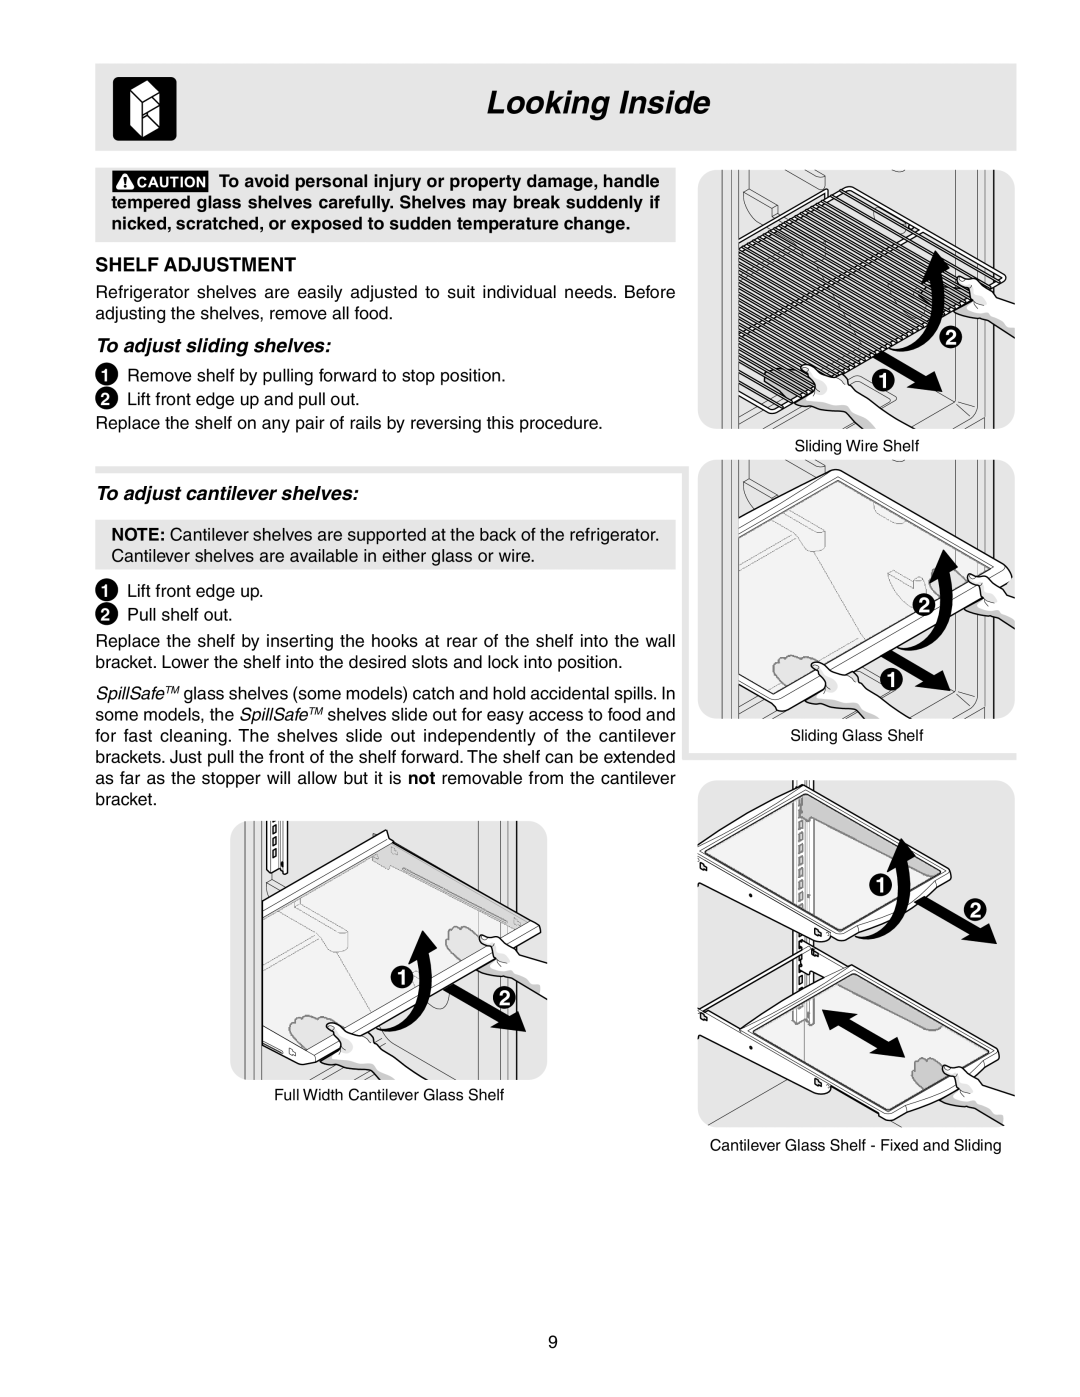 Frigidaire GLRT218WDK7 manual Looking Inside, Shelf Adjustment, To adjust sliding shelves, To adjust cantilever shelves 